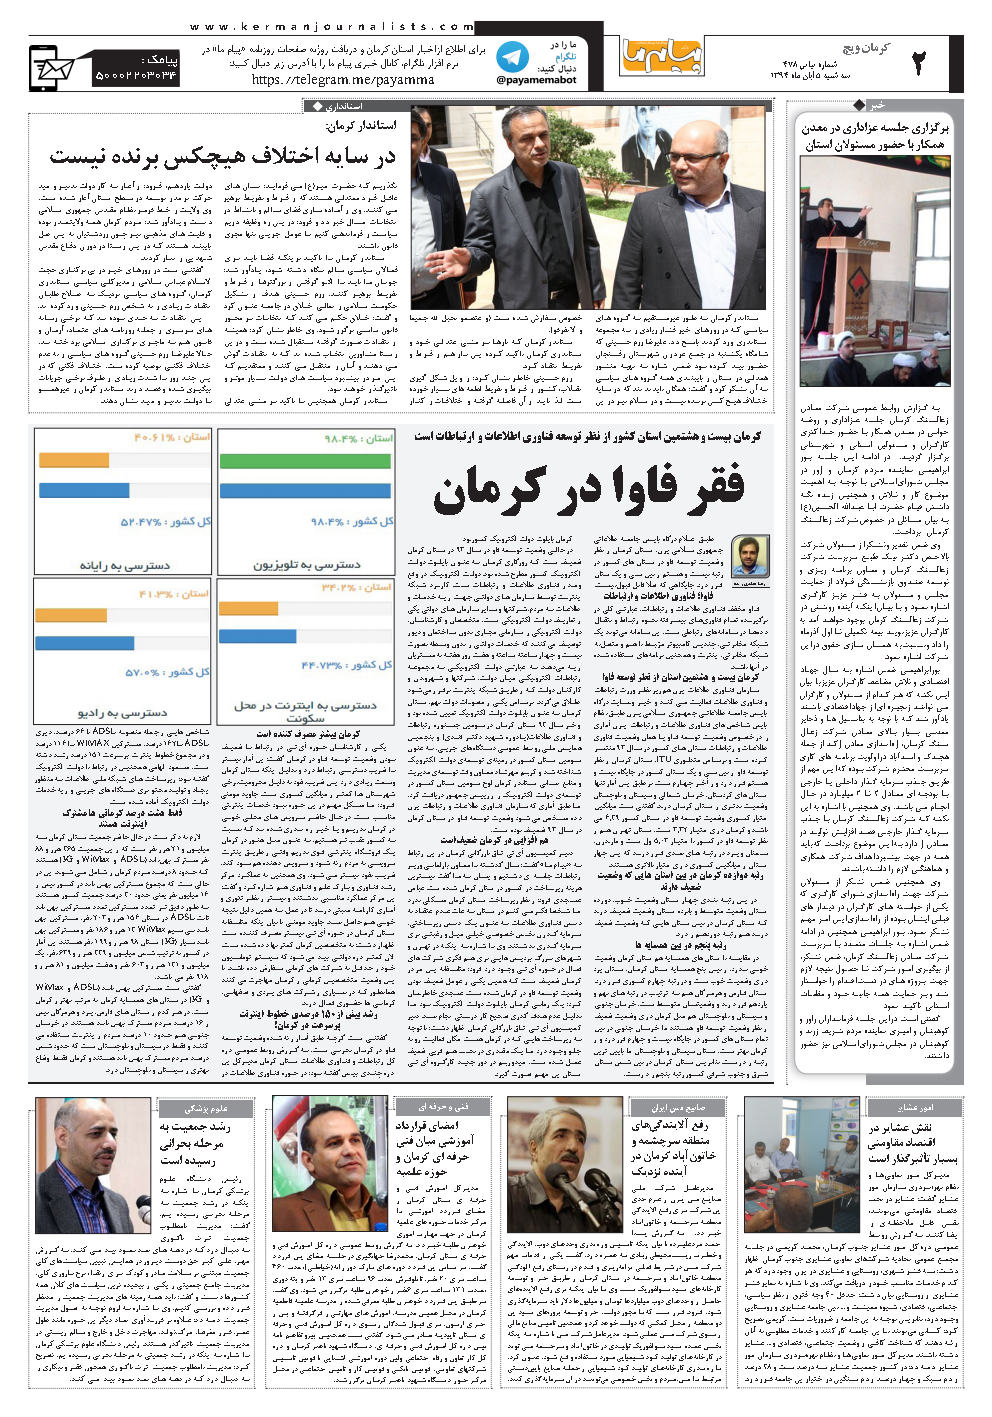 صفحه کرمان ویچ شماره شماره ۴۷۸ روزنامه پیام ما